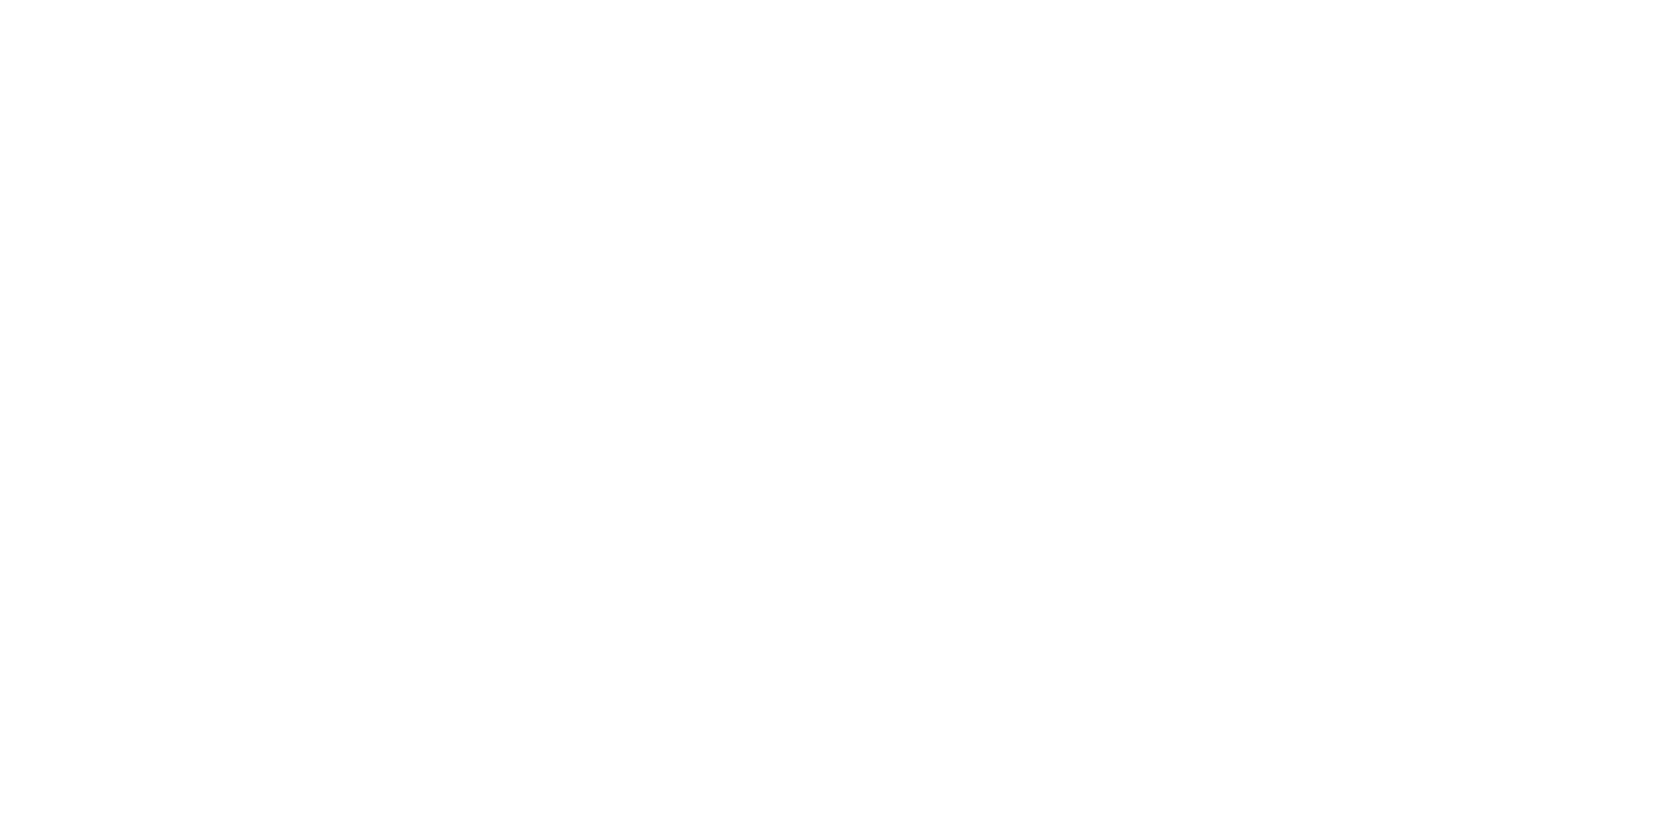 LetterLove od LetterArt.cz